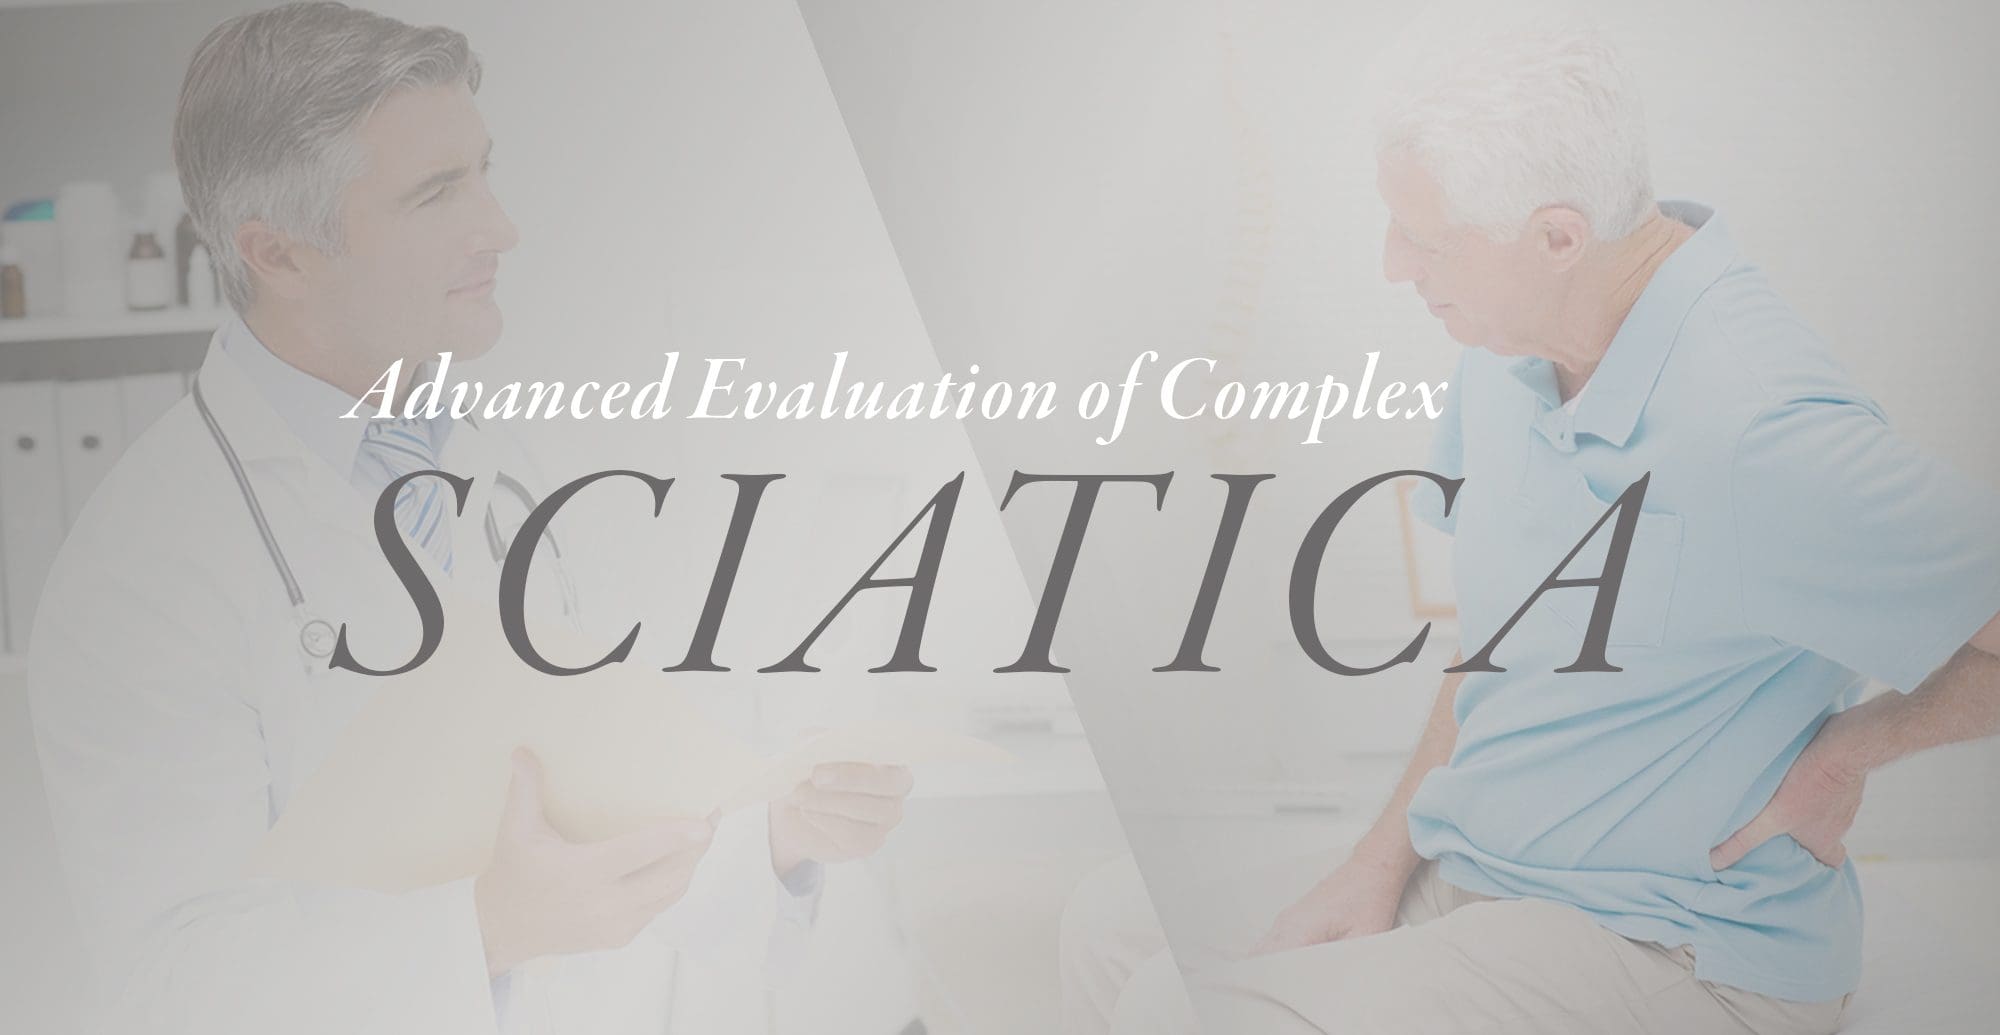 Advanced Evaluation of Complex Sciatica | El Paso, TX Chiropractor